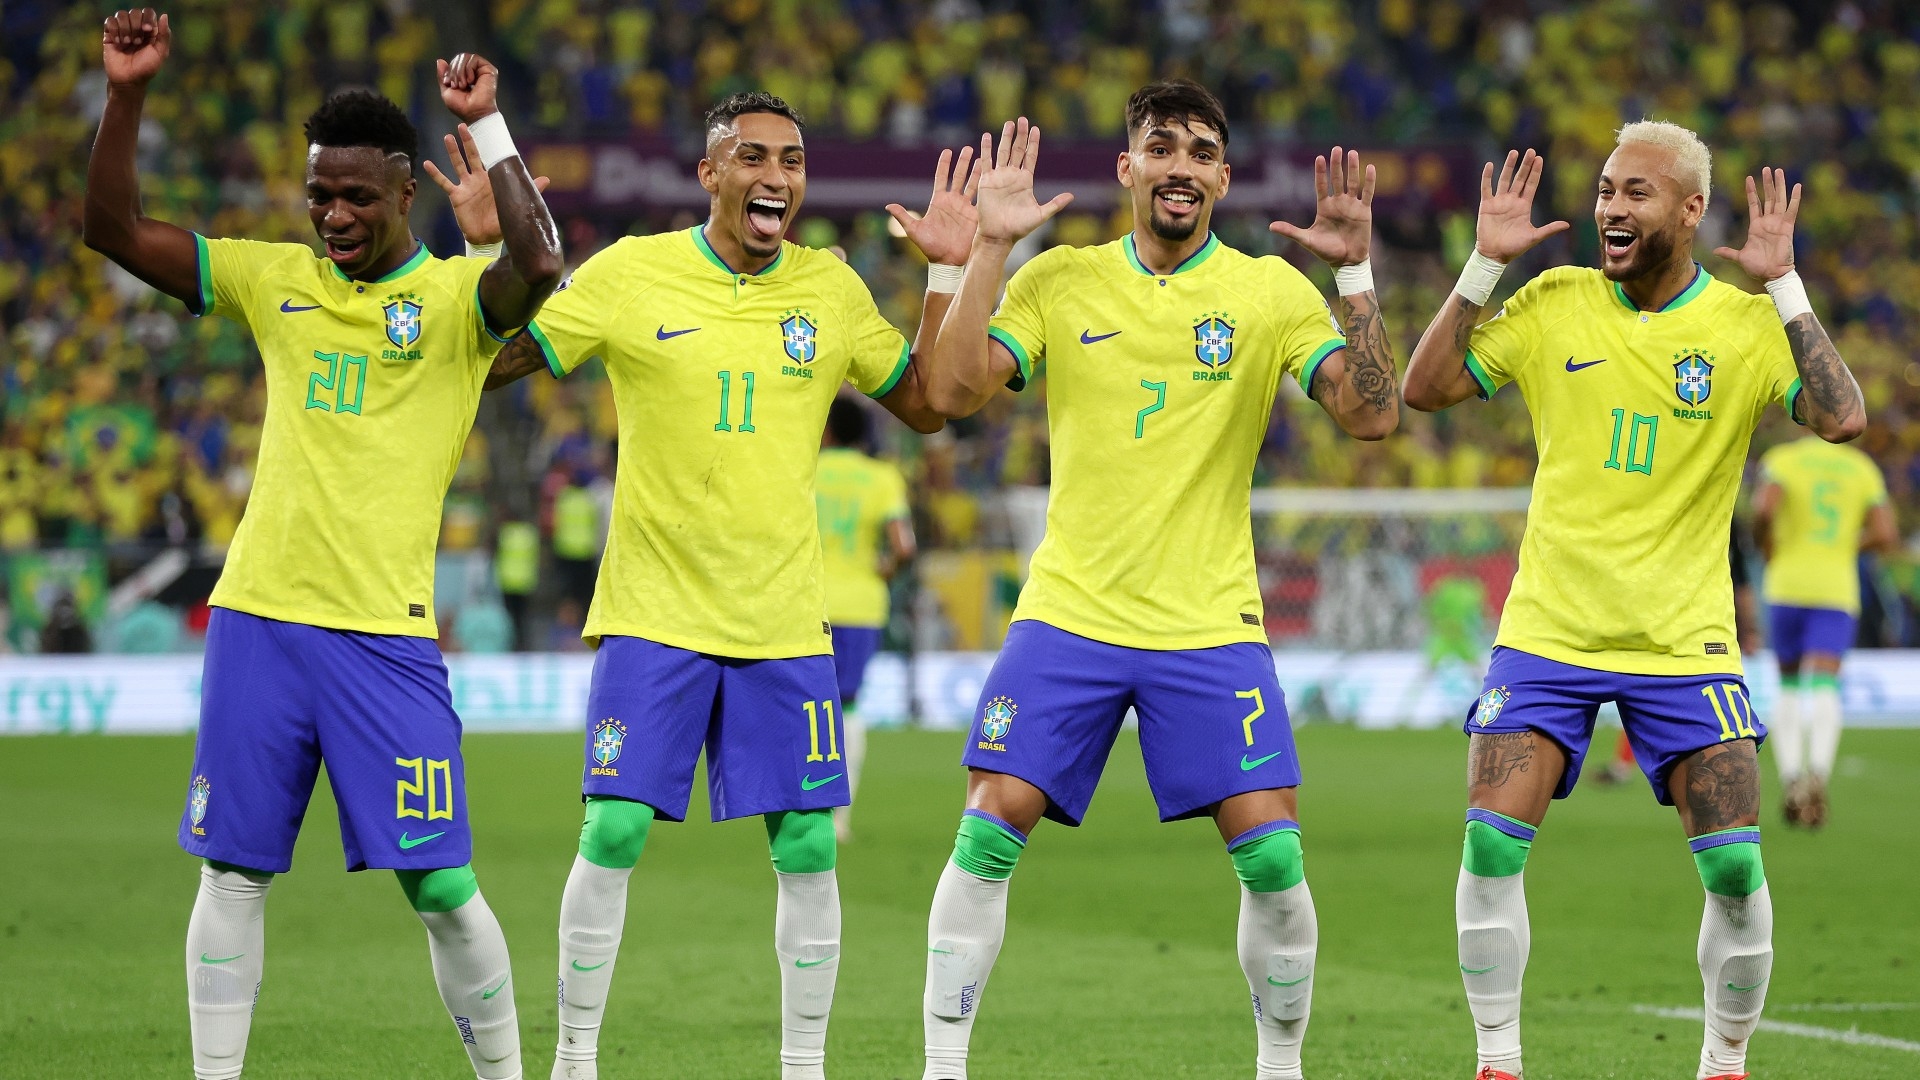 Coupe du monde: Le Brésil risque une grosse amende de 200 000 dollars